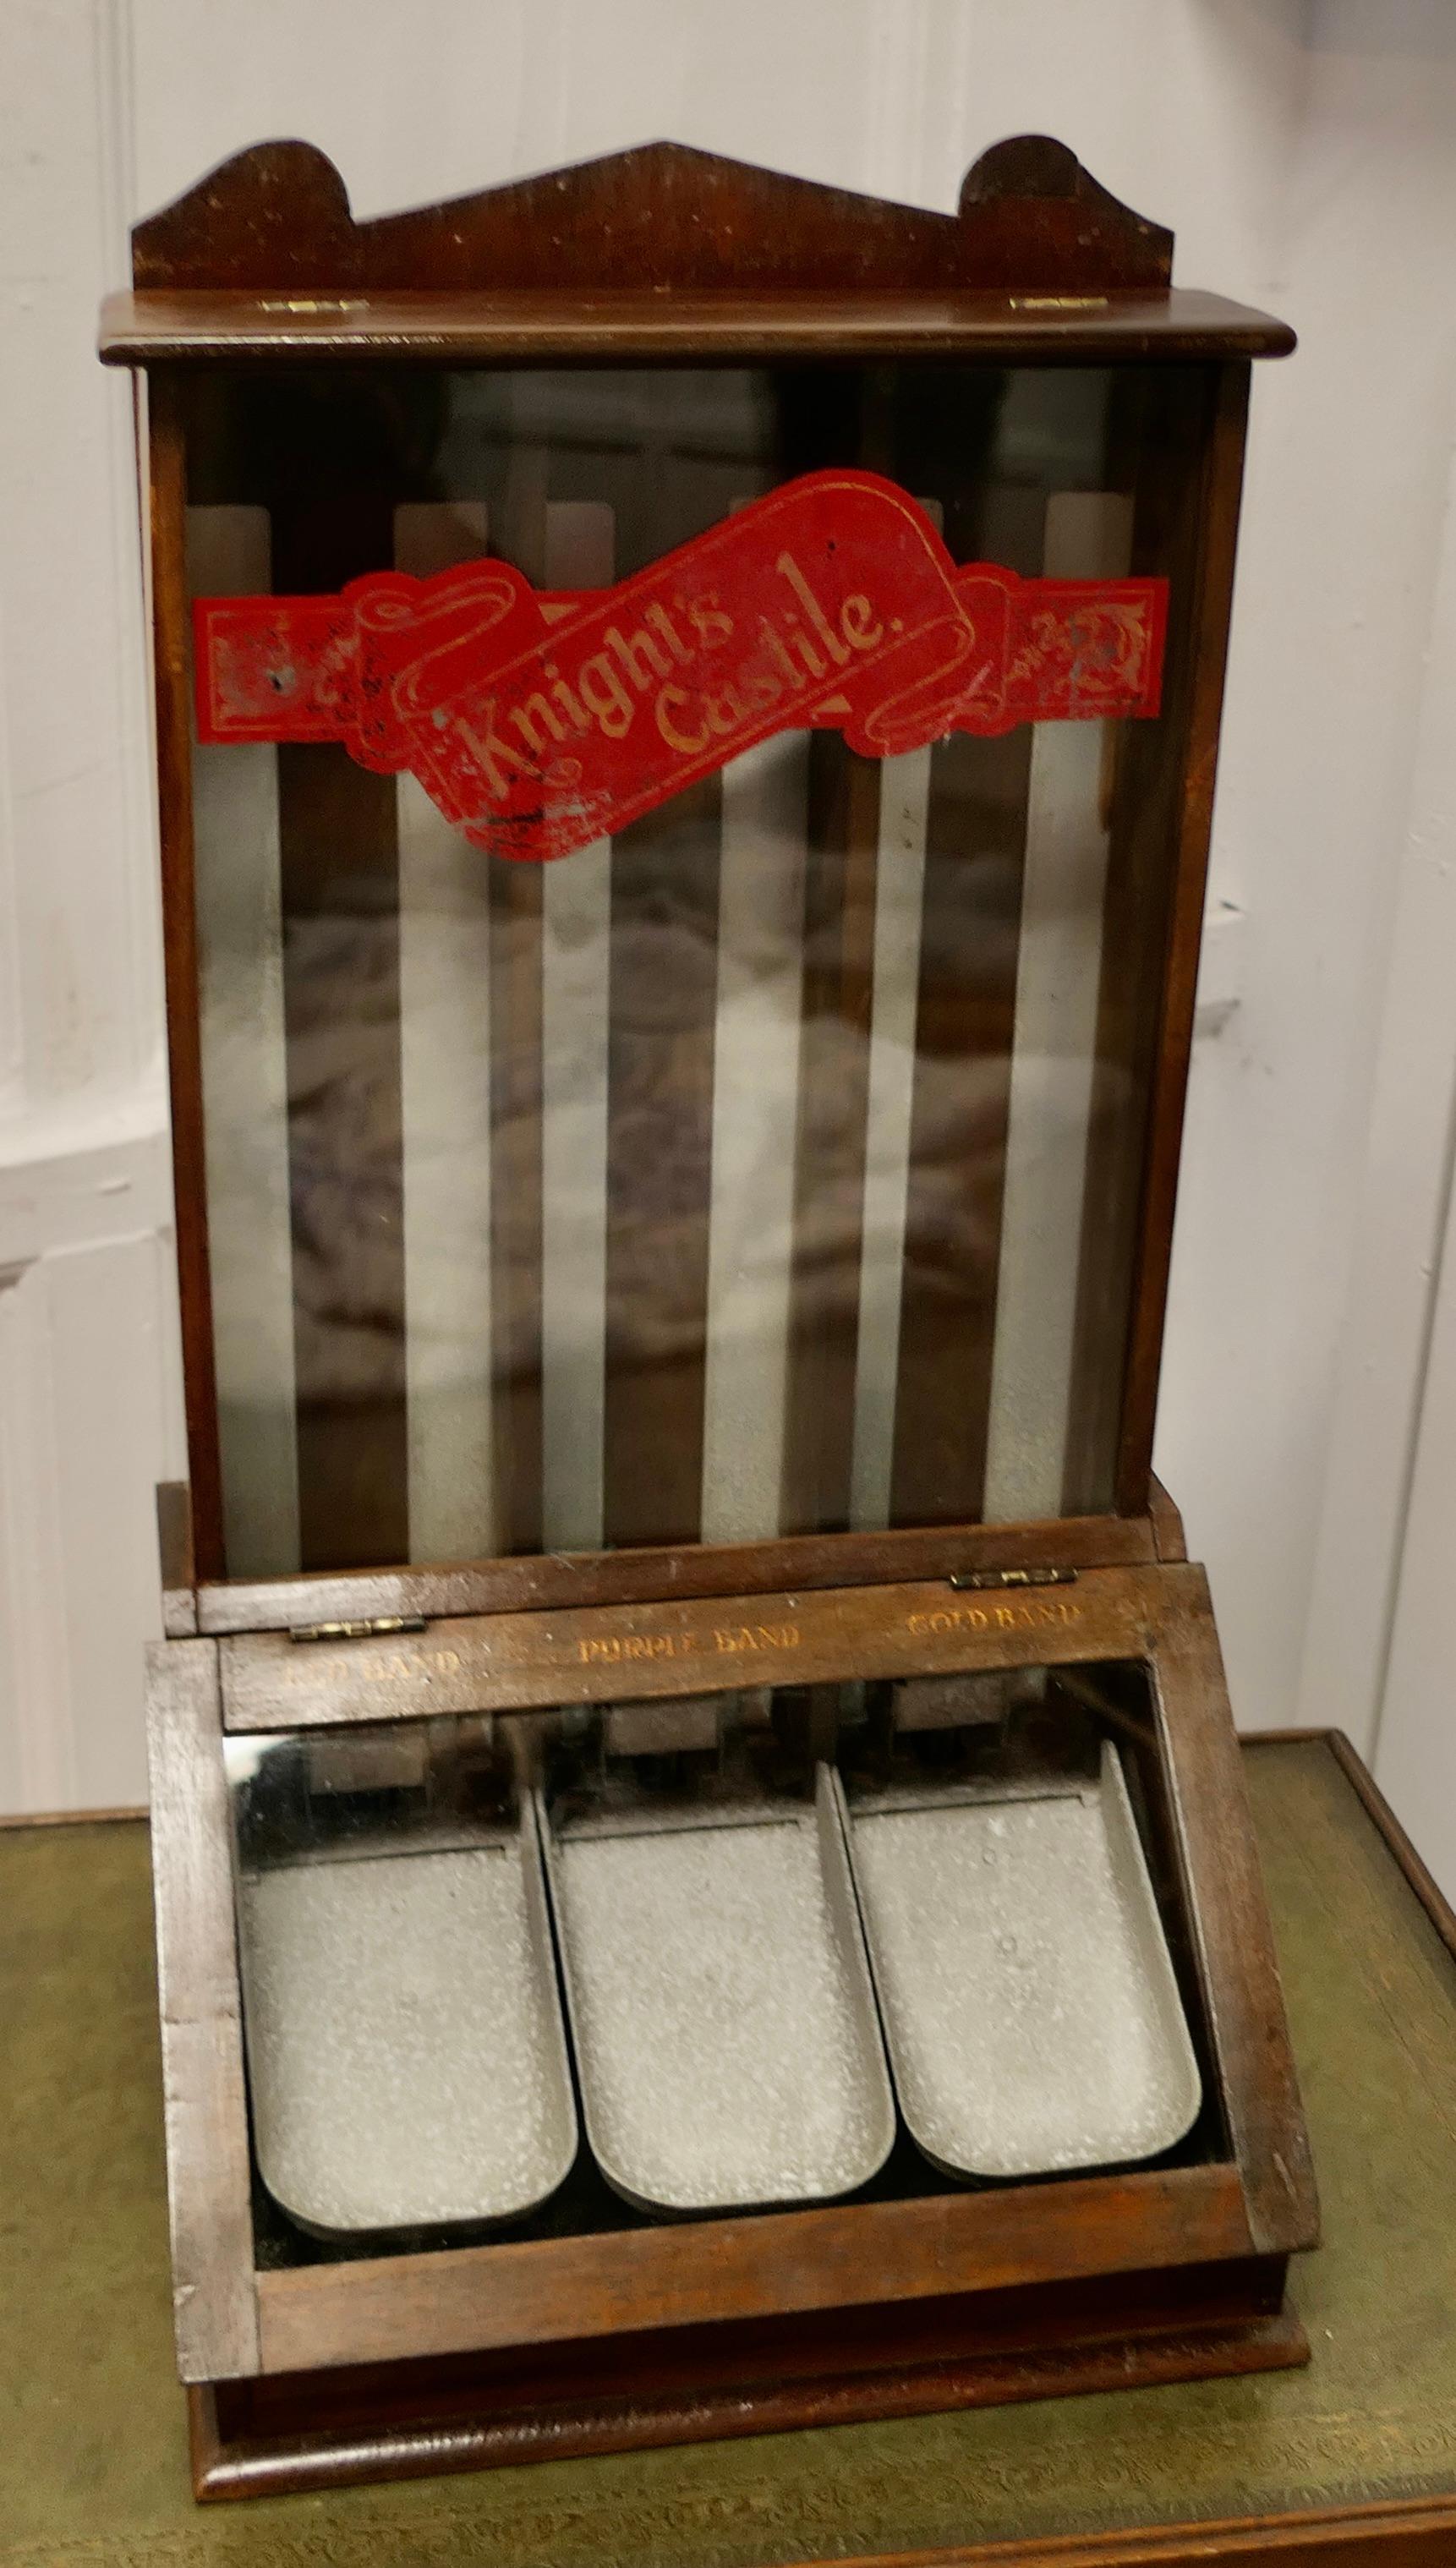 Début du 20ème siècle Knight's Castile Chemist Shop Display Soap Dispensing Cabinet    en vente